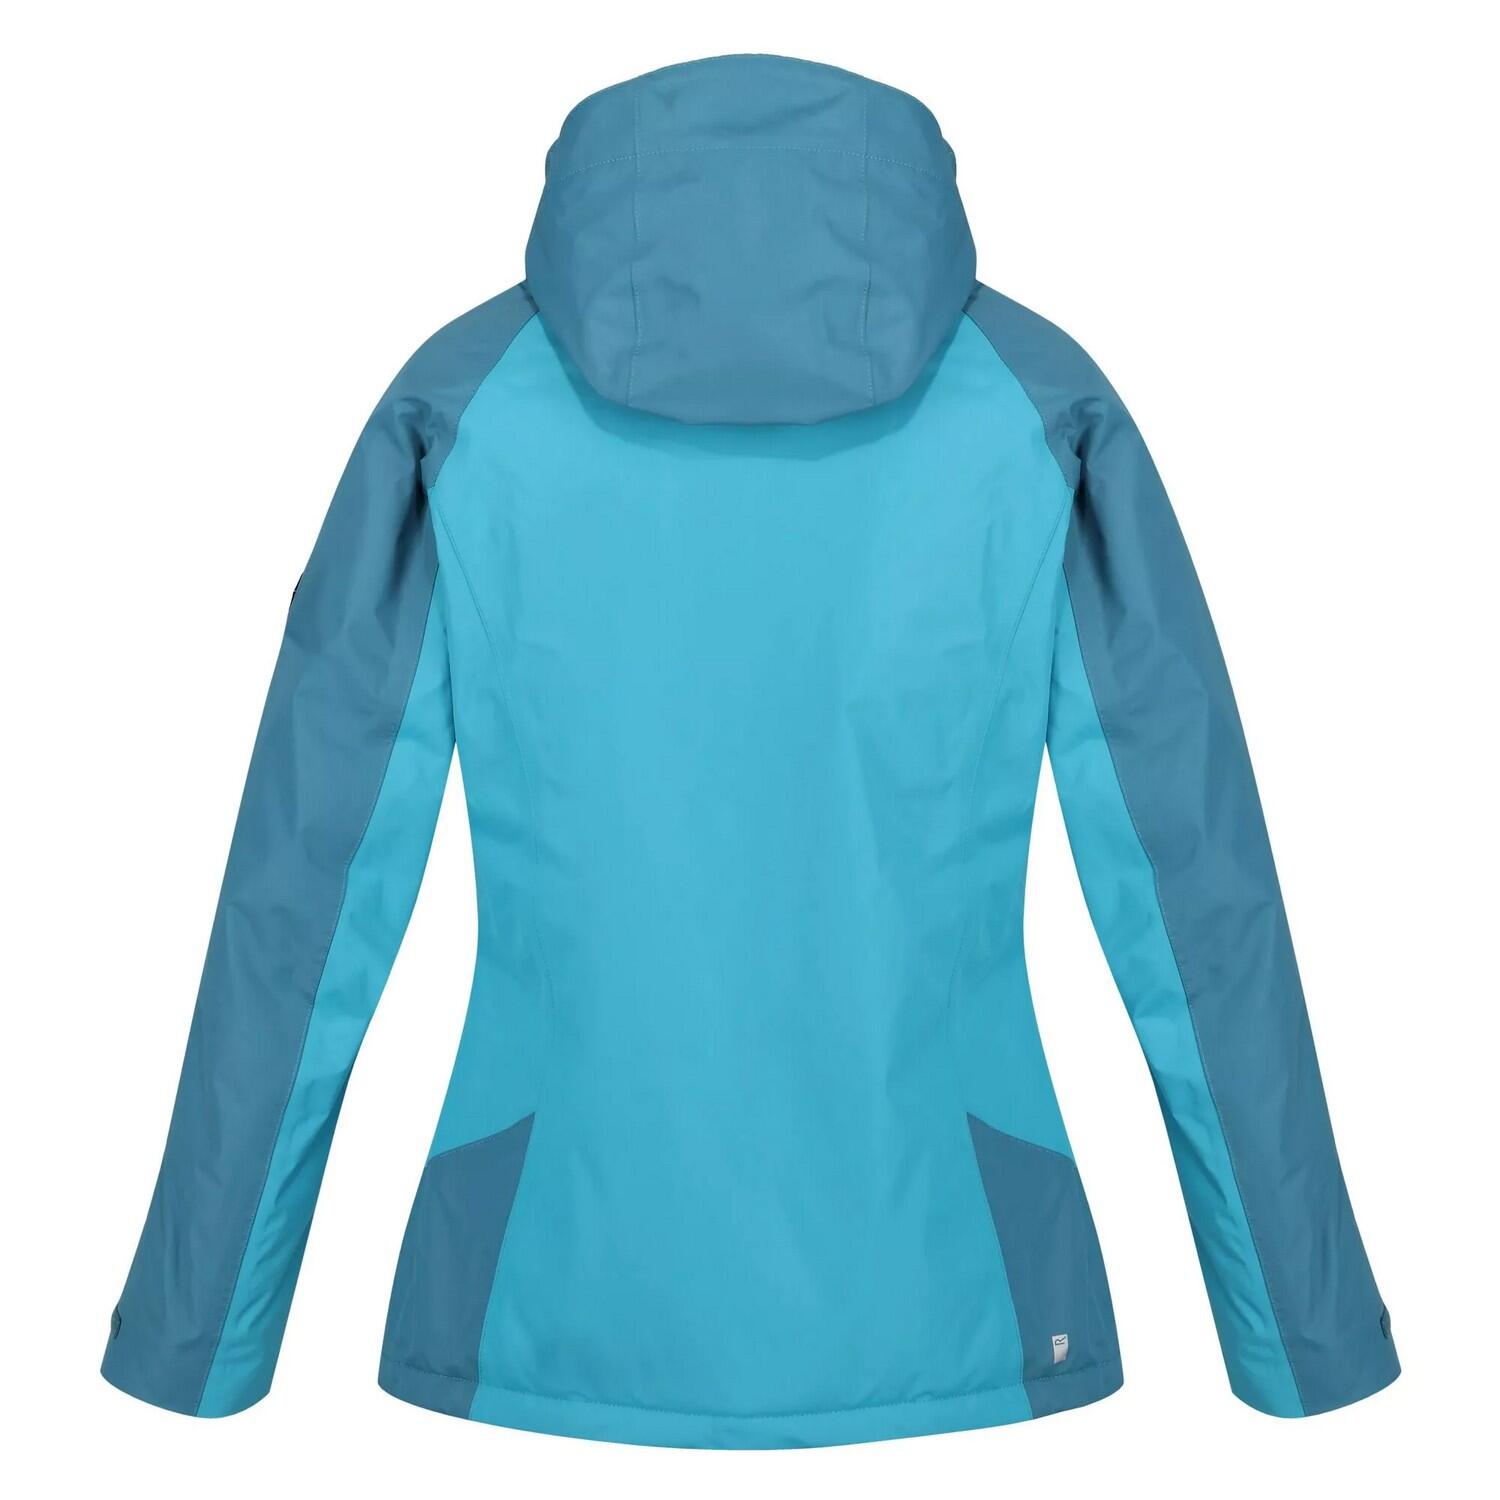 Womens/Ladies Calderdale Winter Waterproof Jacket (Pagoda Blue/Dragonfly) 2/5